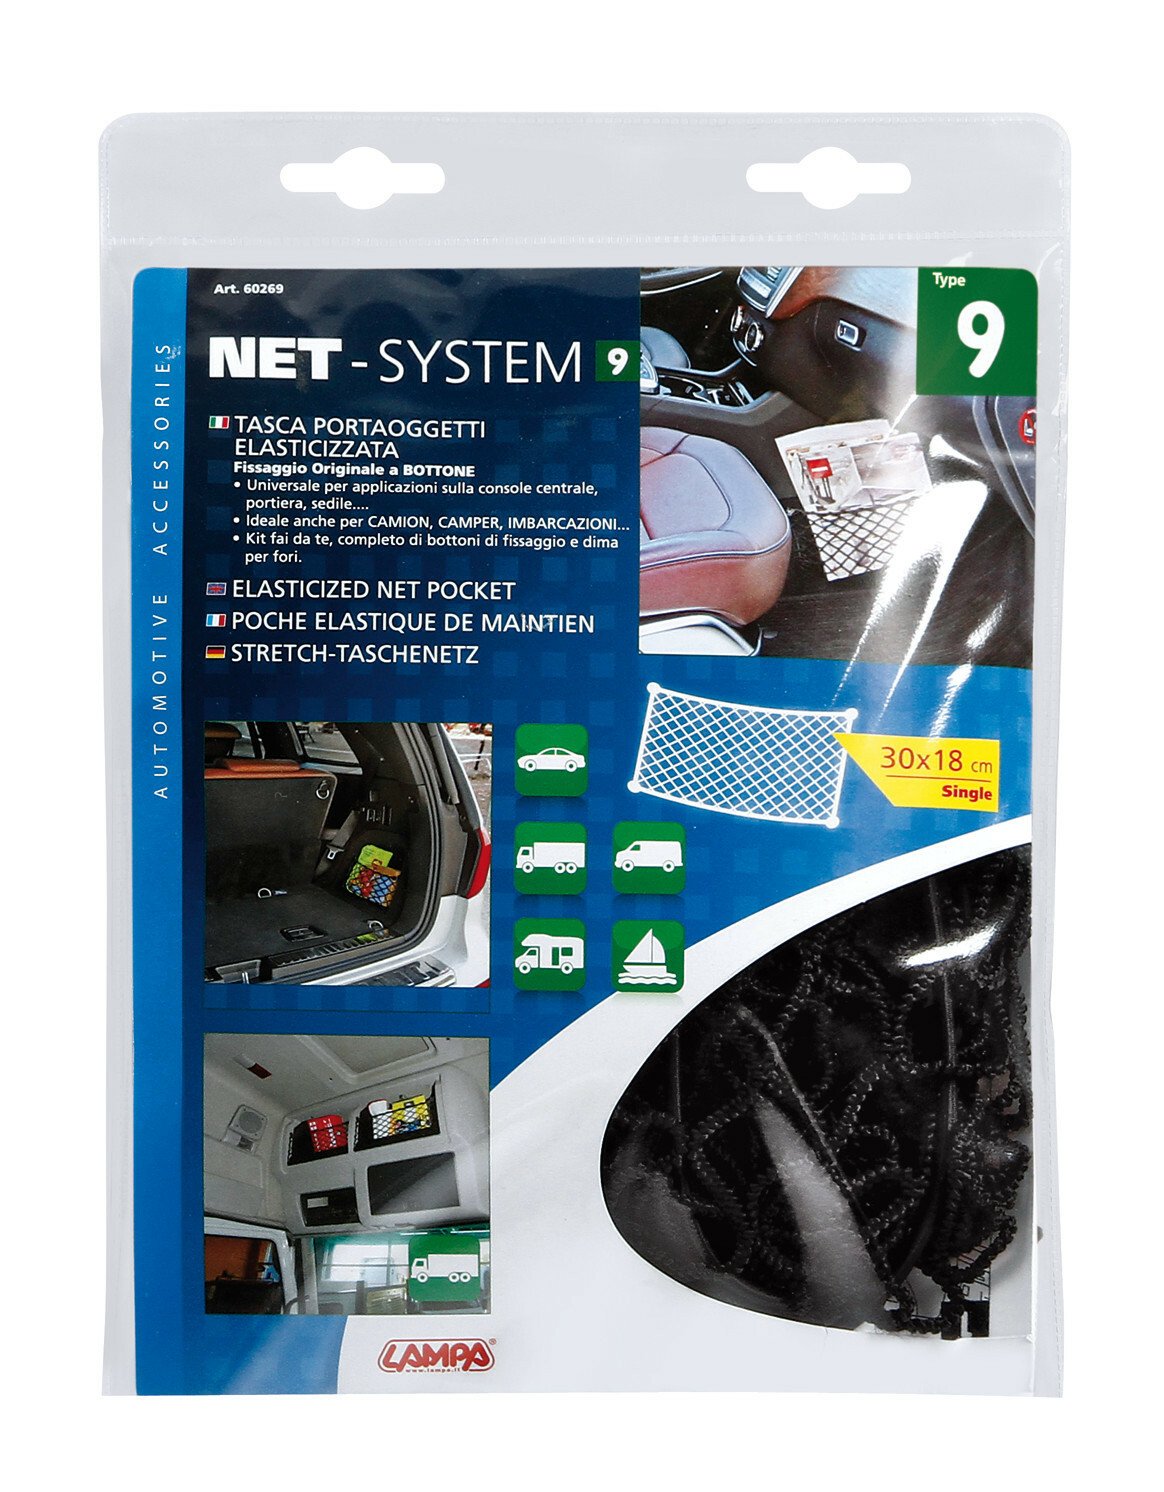 Net-System-9, elasticized net pocket - 30x18cm thumb